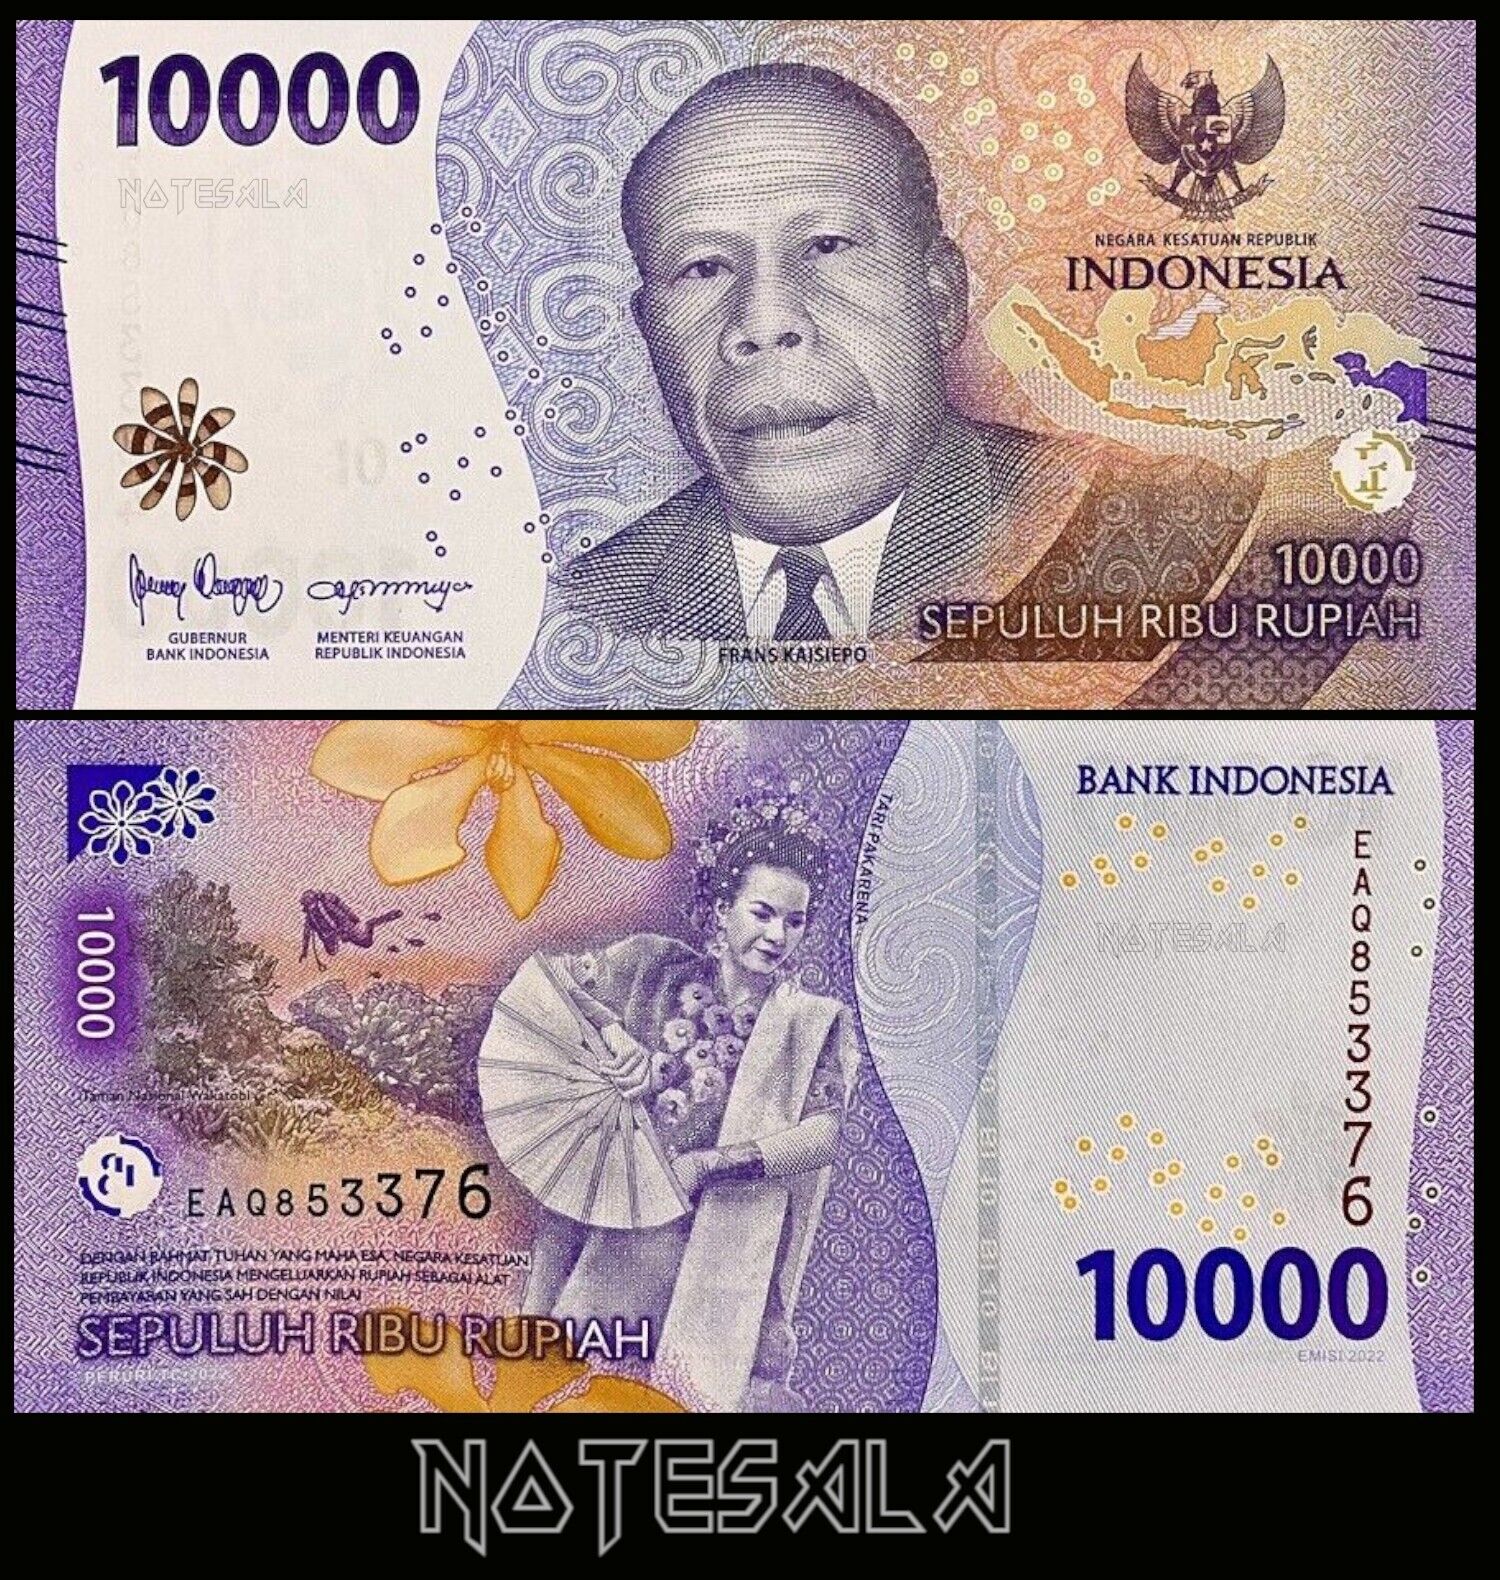 Tiền Indonesia mệnh giá 10.000 Rupaih phiên bản mới phát hành, mới cứng